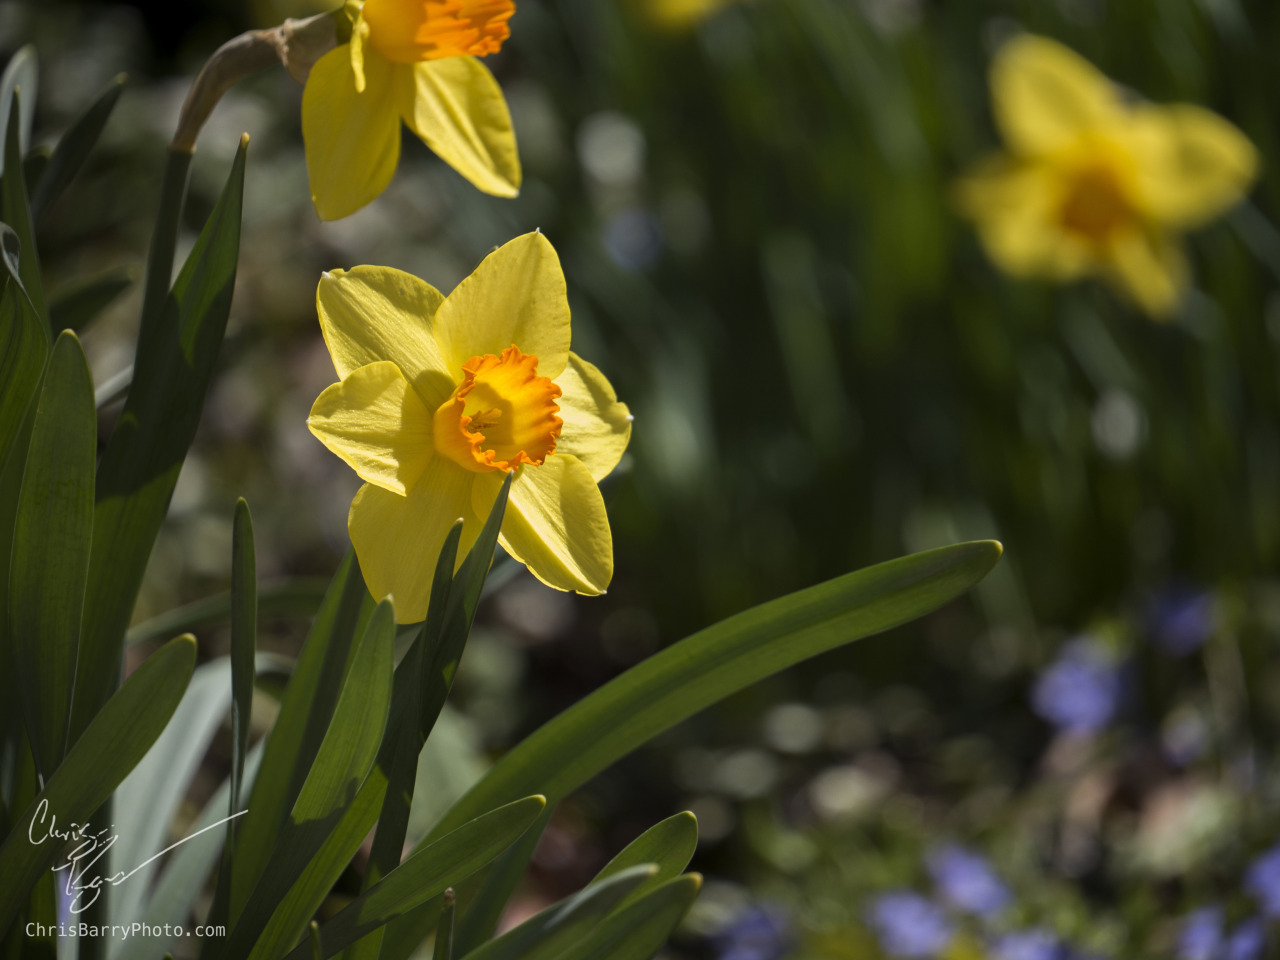 Daffodils again